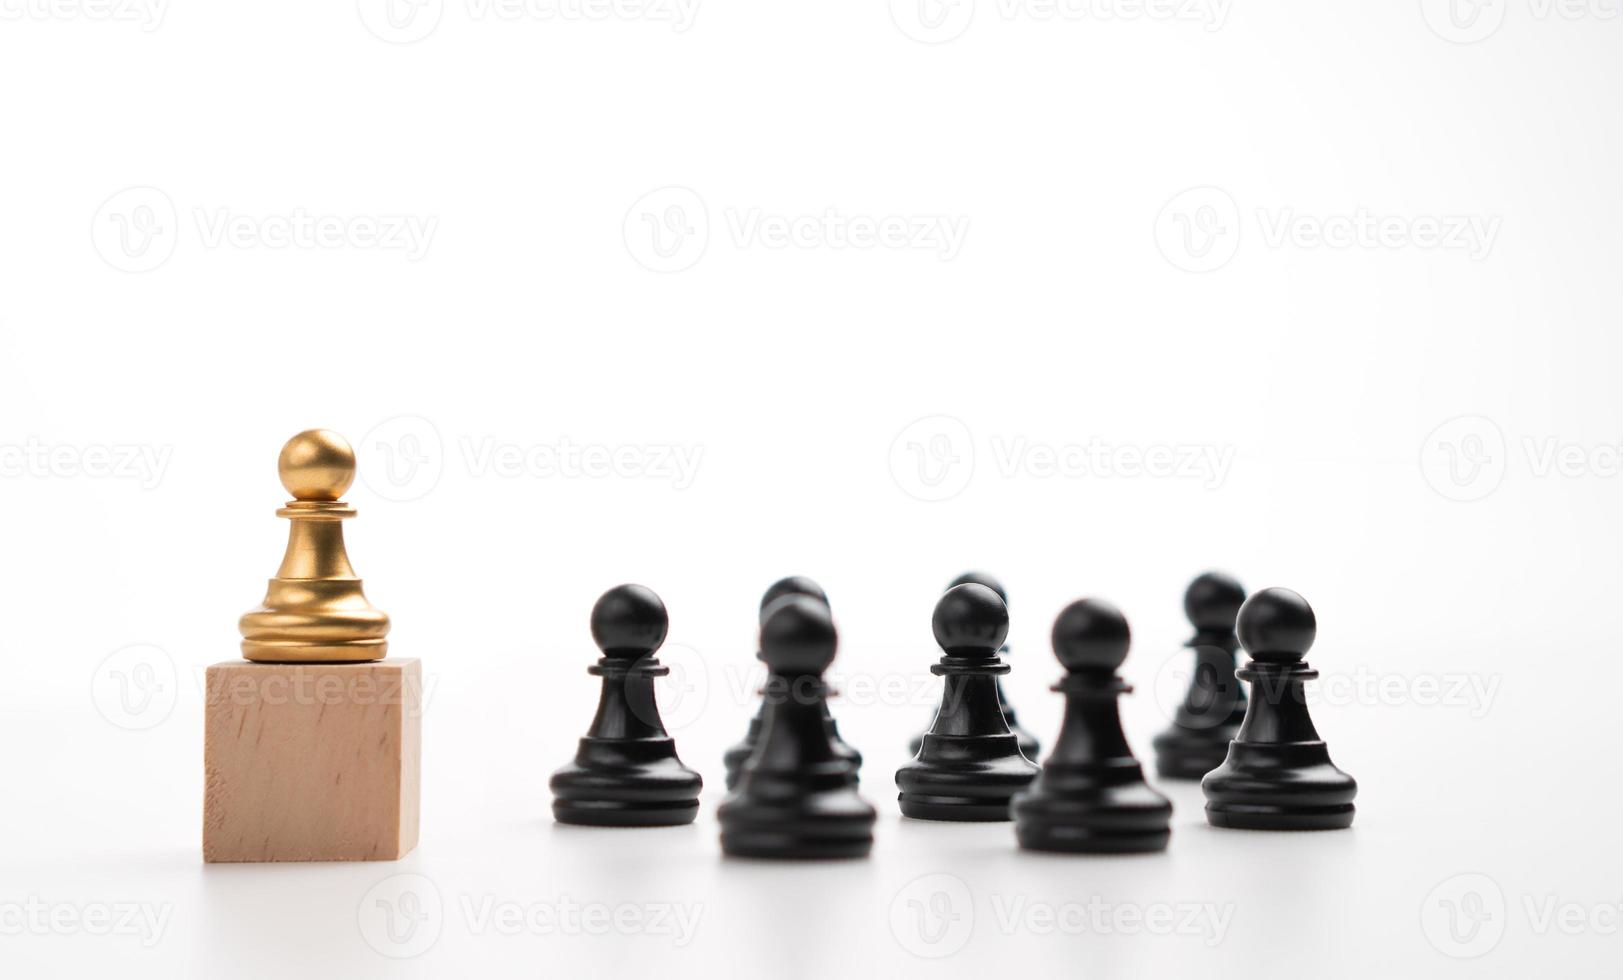 le leadership du pion d'échecs doré debout sur la boîte montre l'influence et l'autonomisation. concept de leadership d'entreprise pour l'équipe de direction, gagnant du concours et leader avec stratégie photo